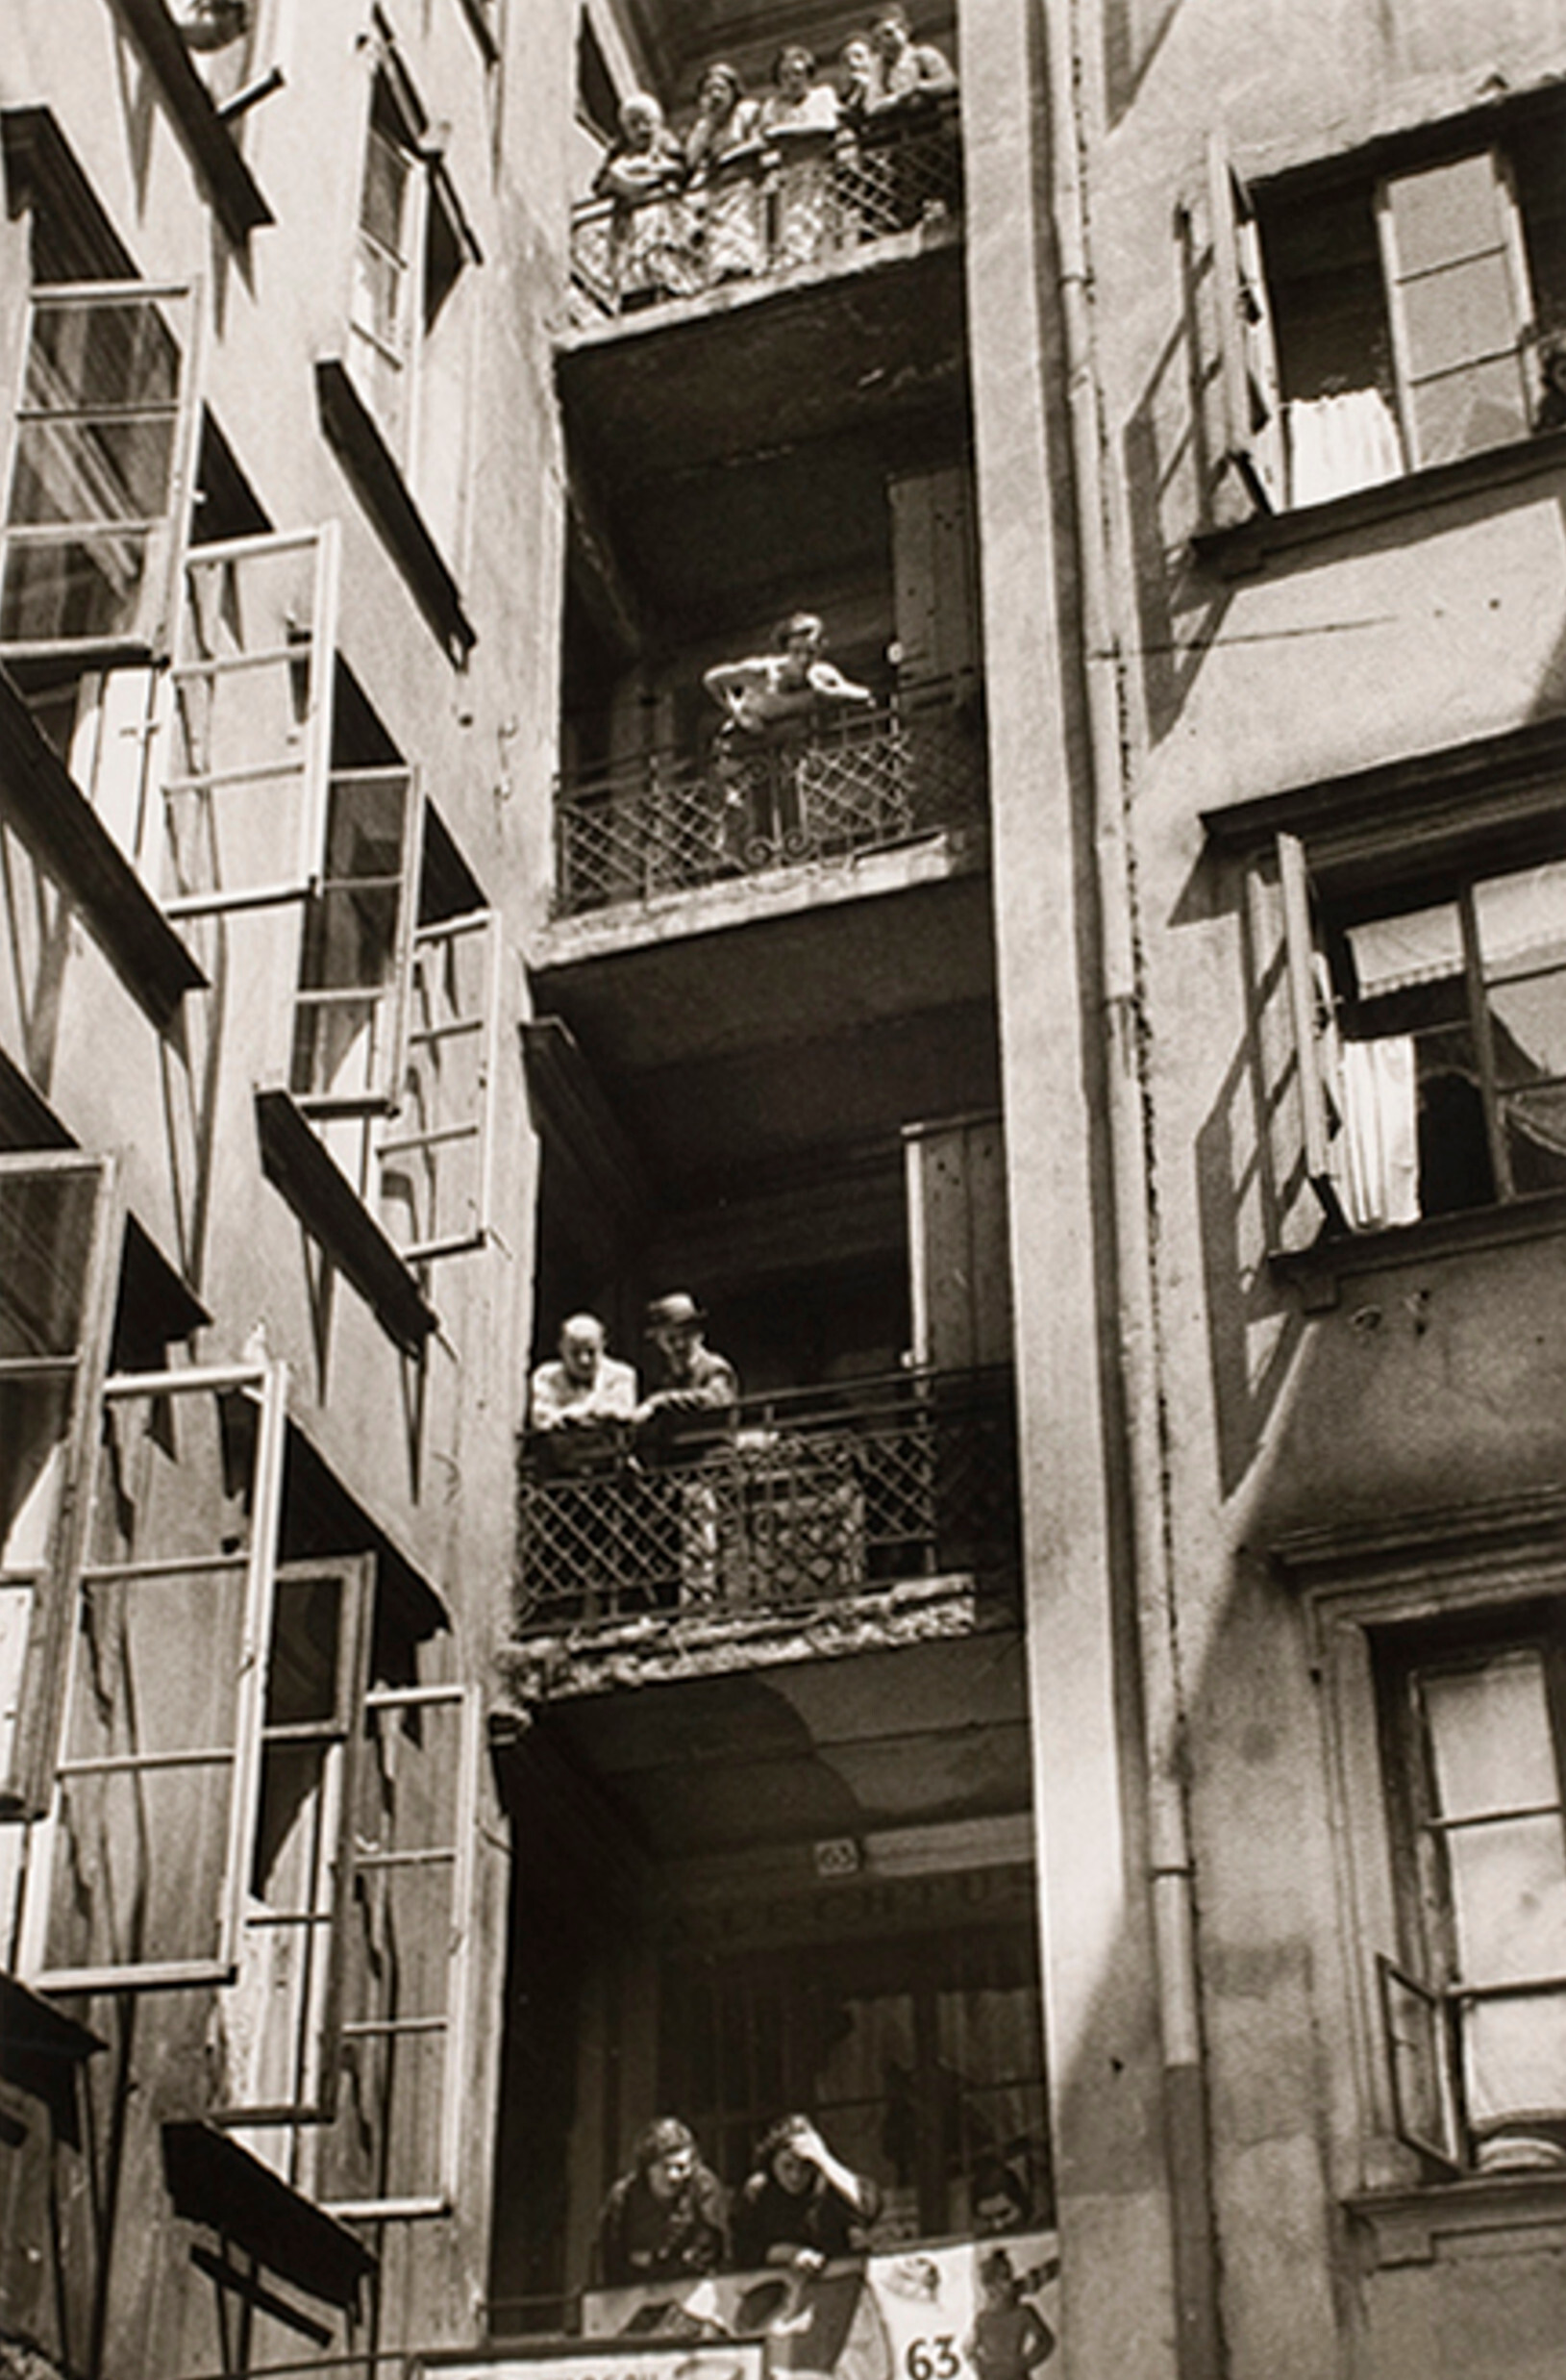 Внутренний двор дома на улице Налевки, торговый район в еврейском квартале Варшавы, ок. 1935-38 г. Фотограф Роман Вишняк